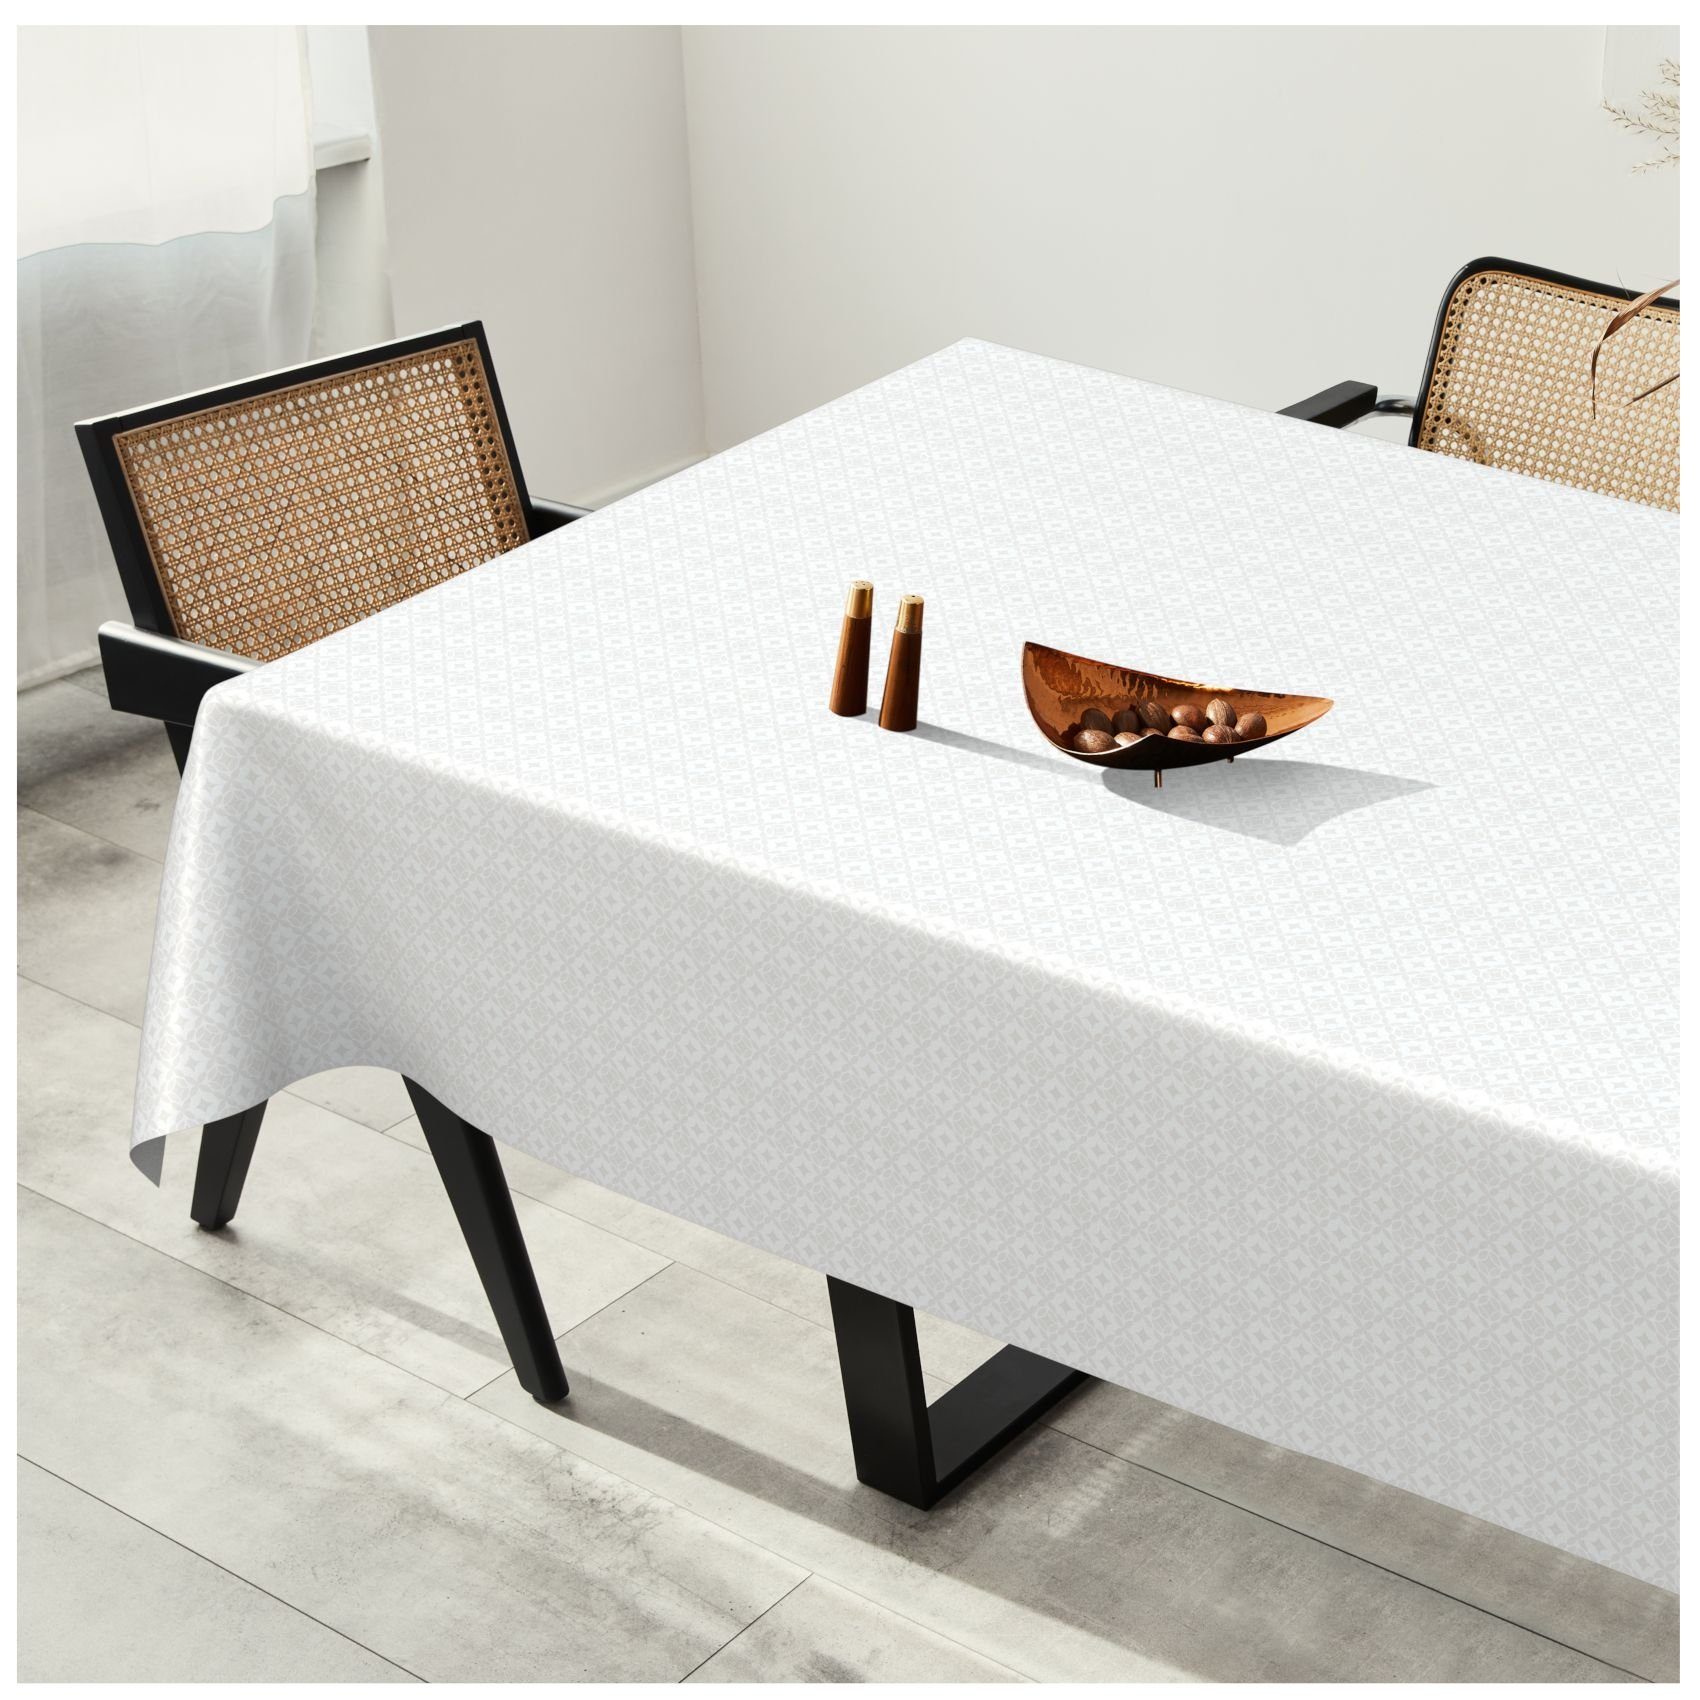 ANRO Einfarbig Glatt Wachstuch Weiß MIMOSA Tischdecke Wasserabweisend, Tischdecke Robust